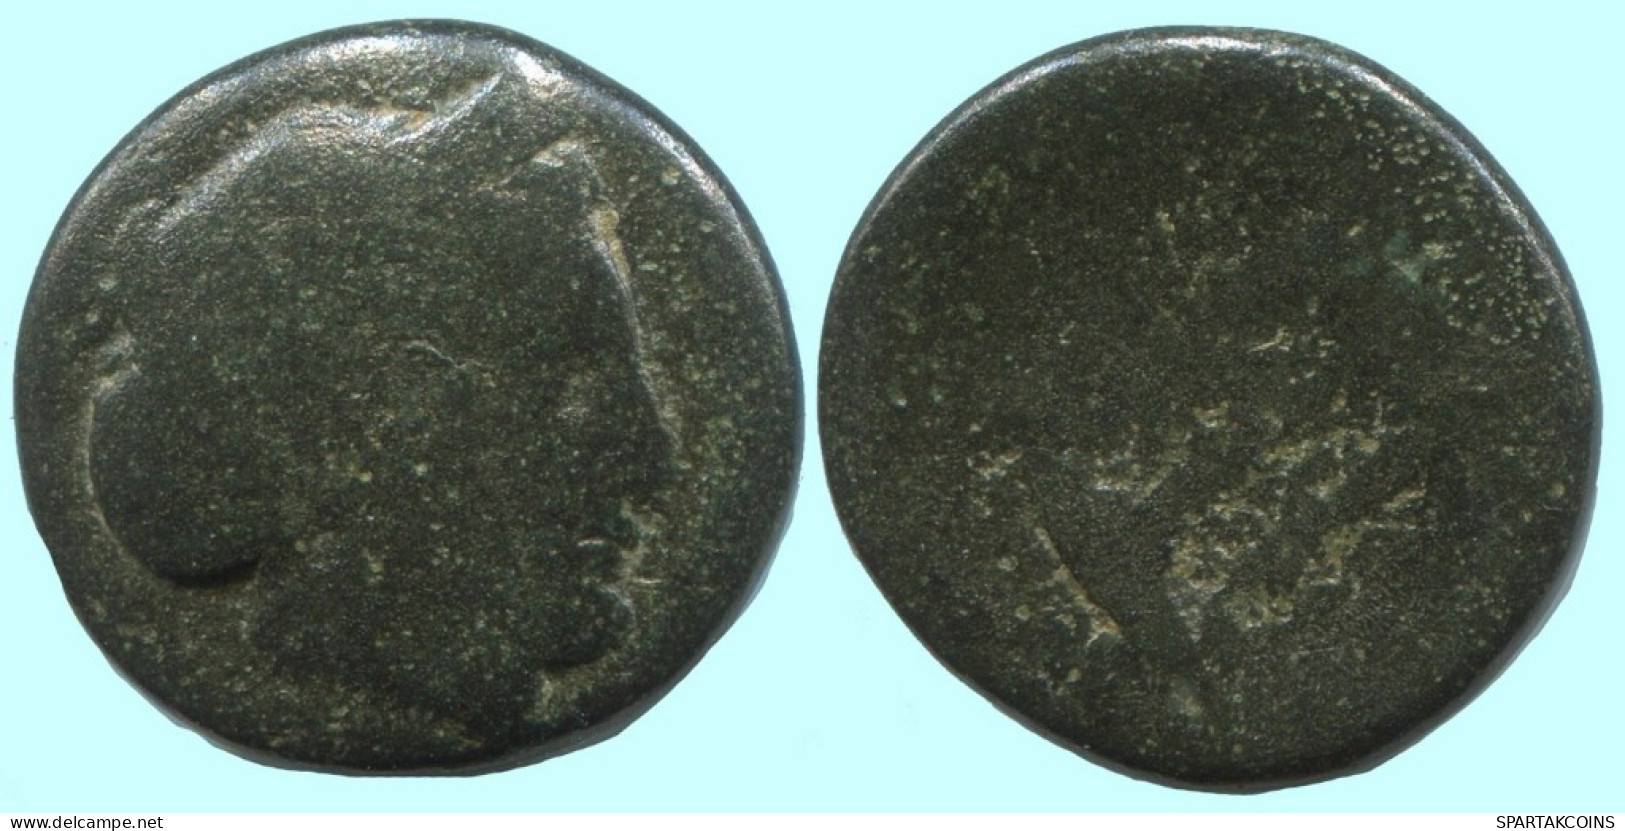 Auténtico ORIGINAL GRIEGO ANTIGUO Moneda 5g/17mm #AF947.12.E.A - Griechische Münzen